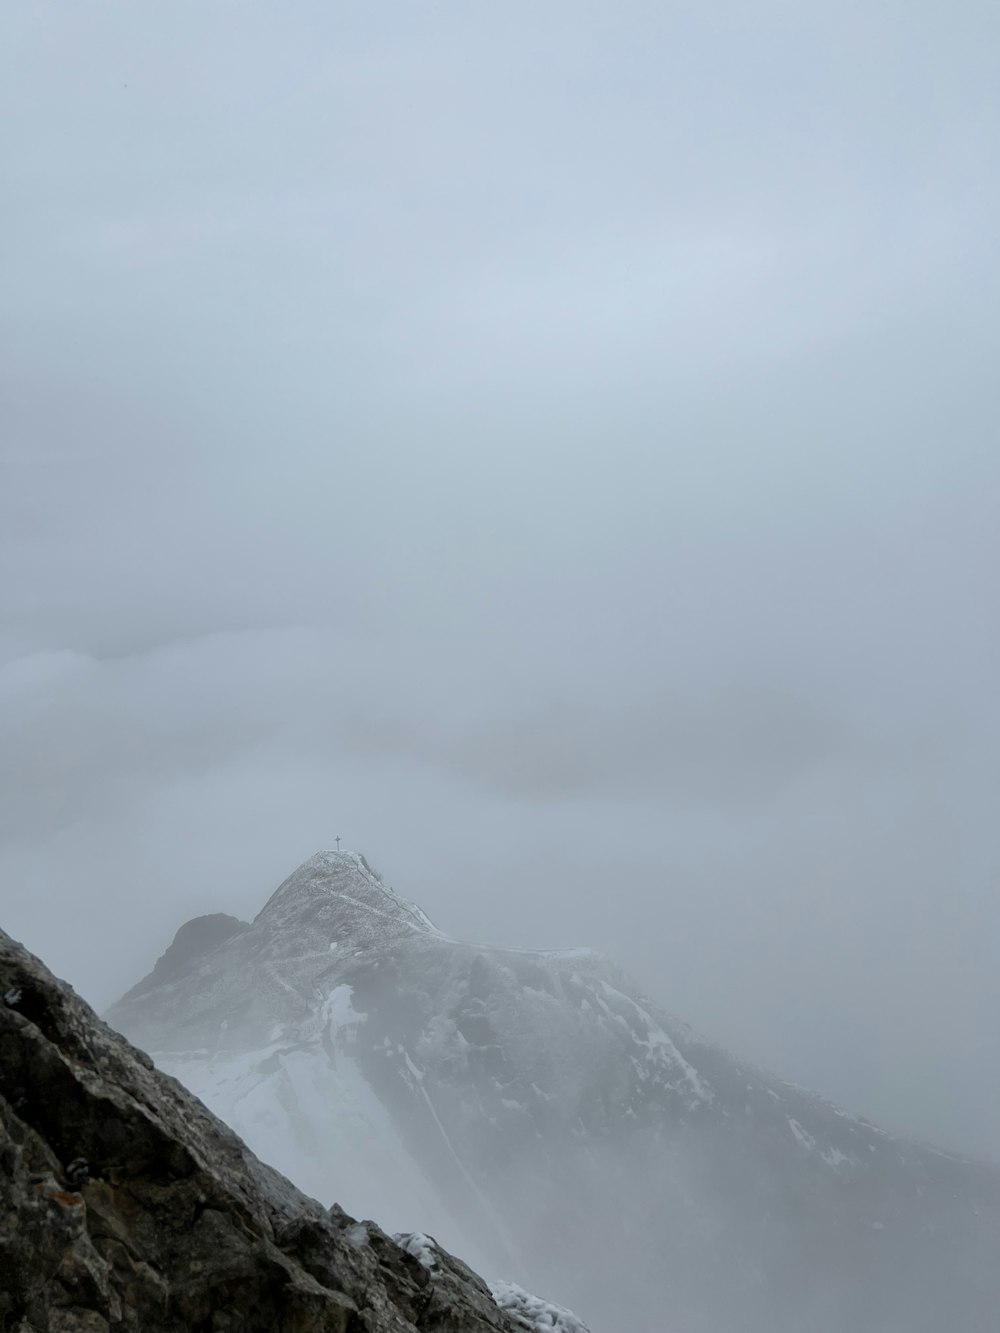 Un uomo in piedi sulla cima di una montagna coperta di neve